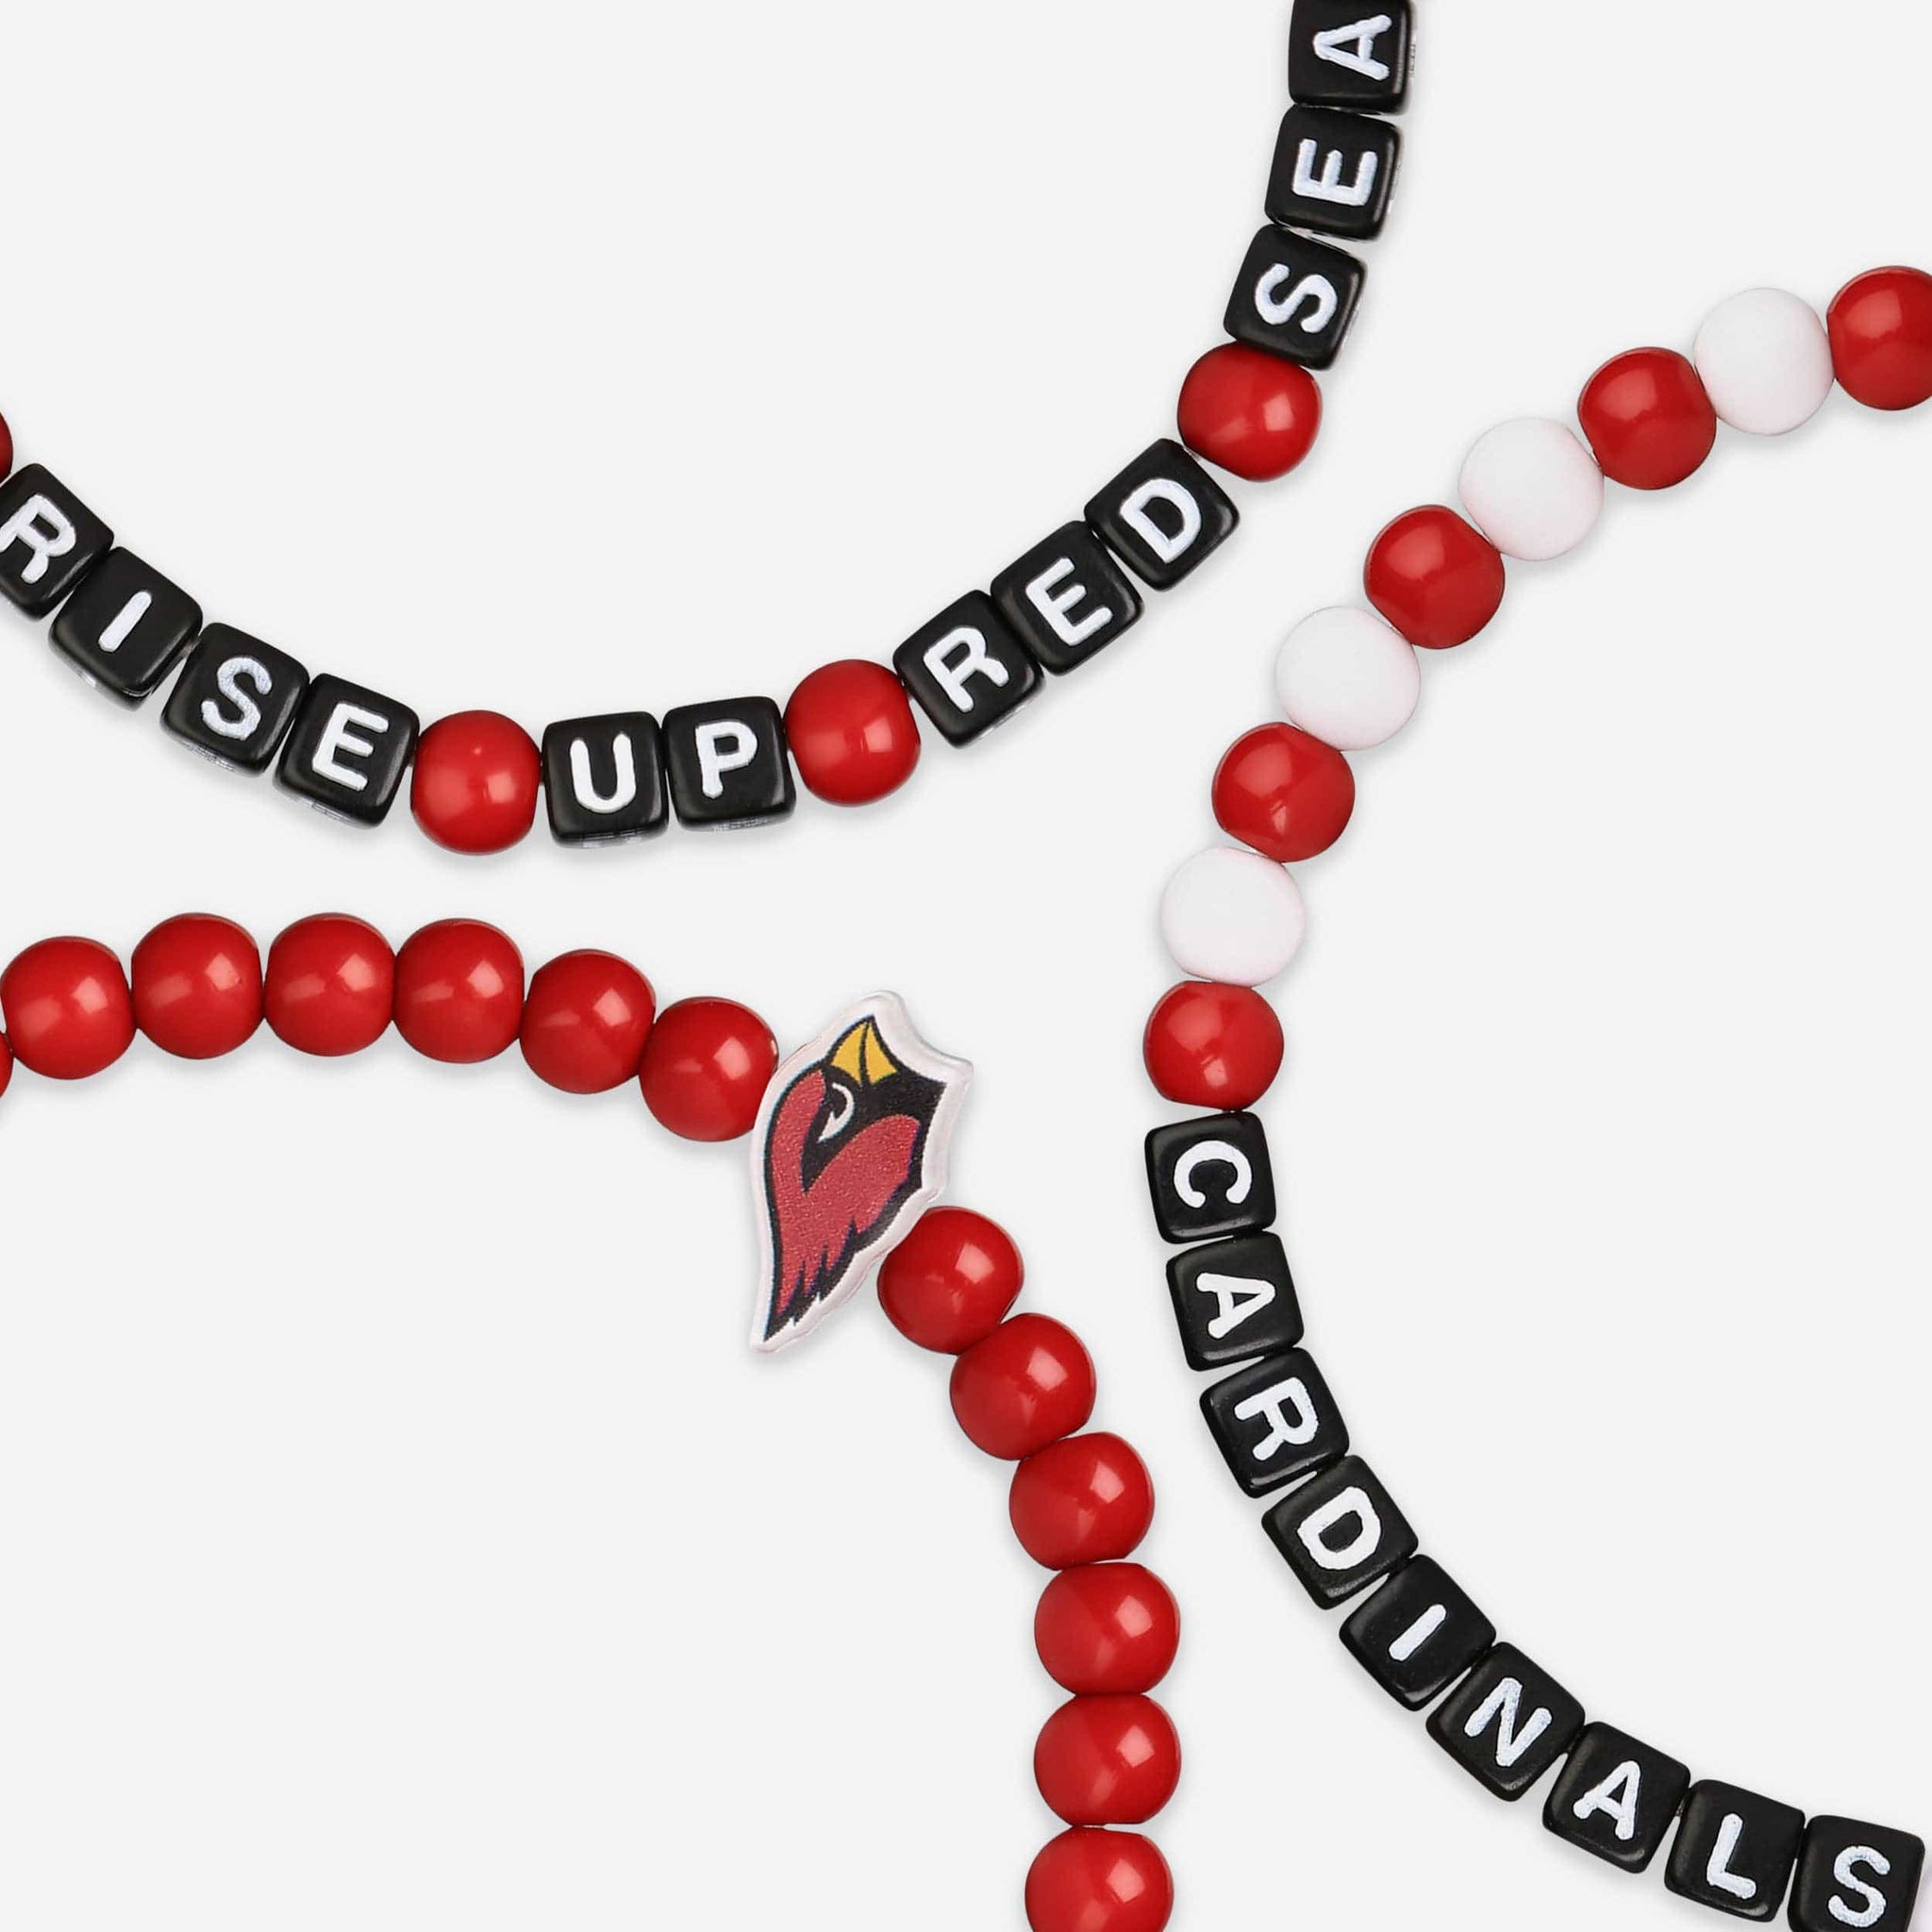 St. Louis Cardinals Bracelet Bead Style CO